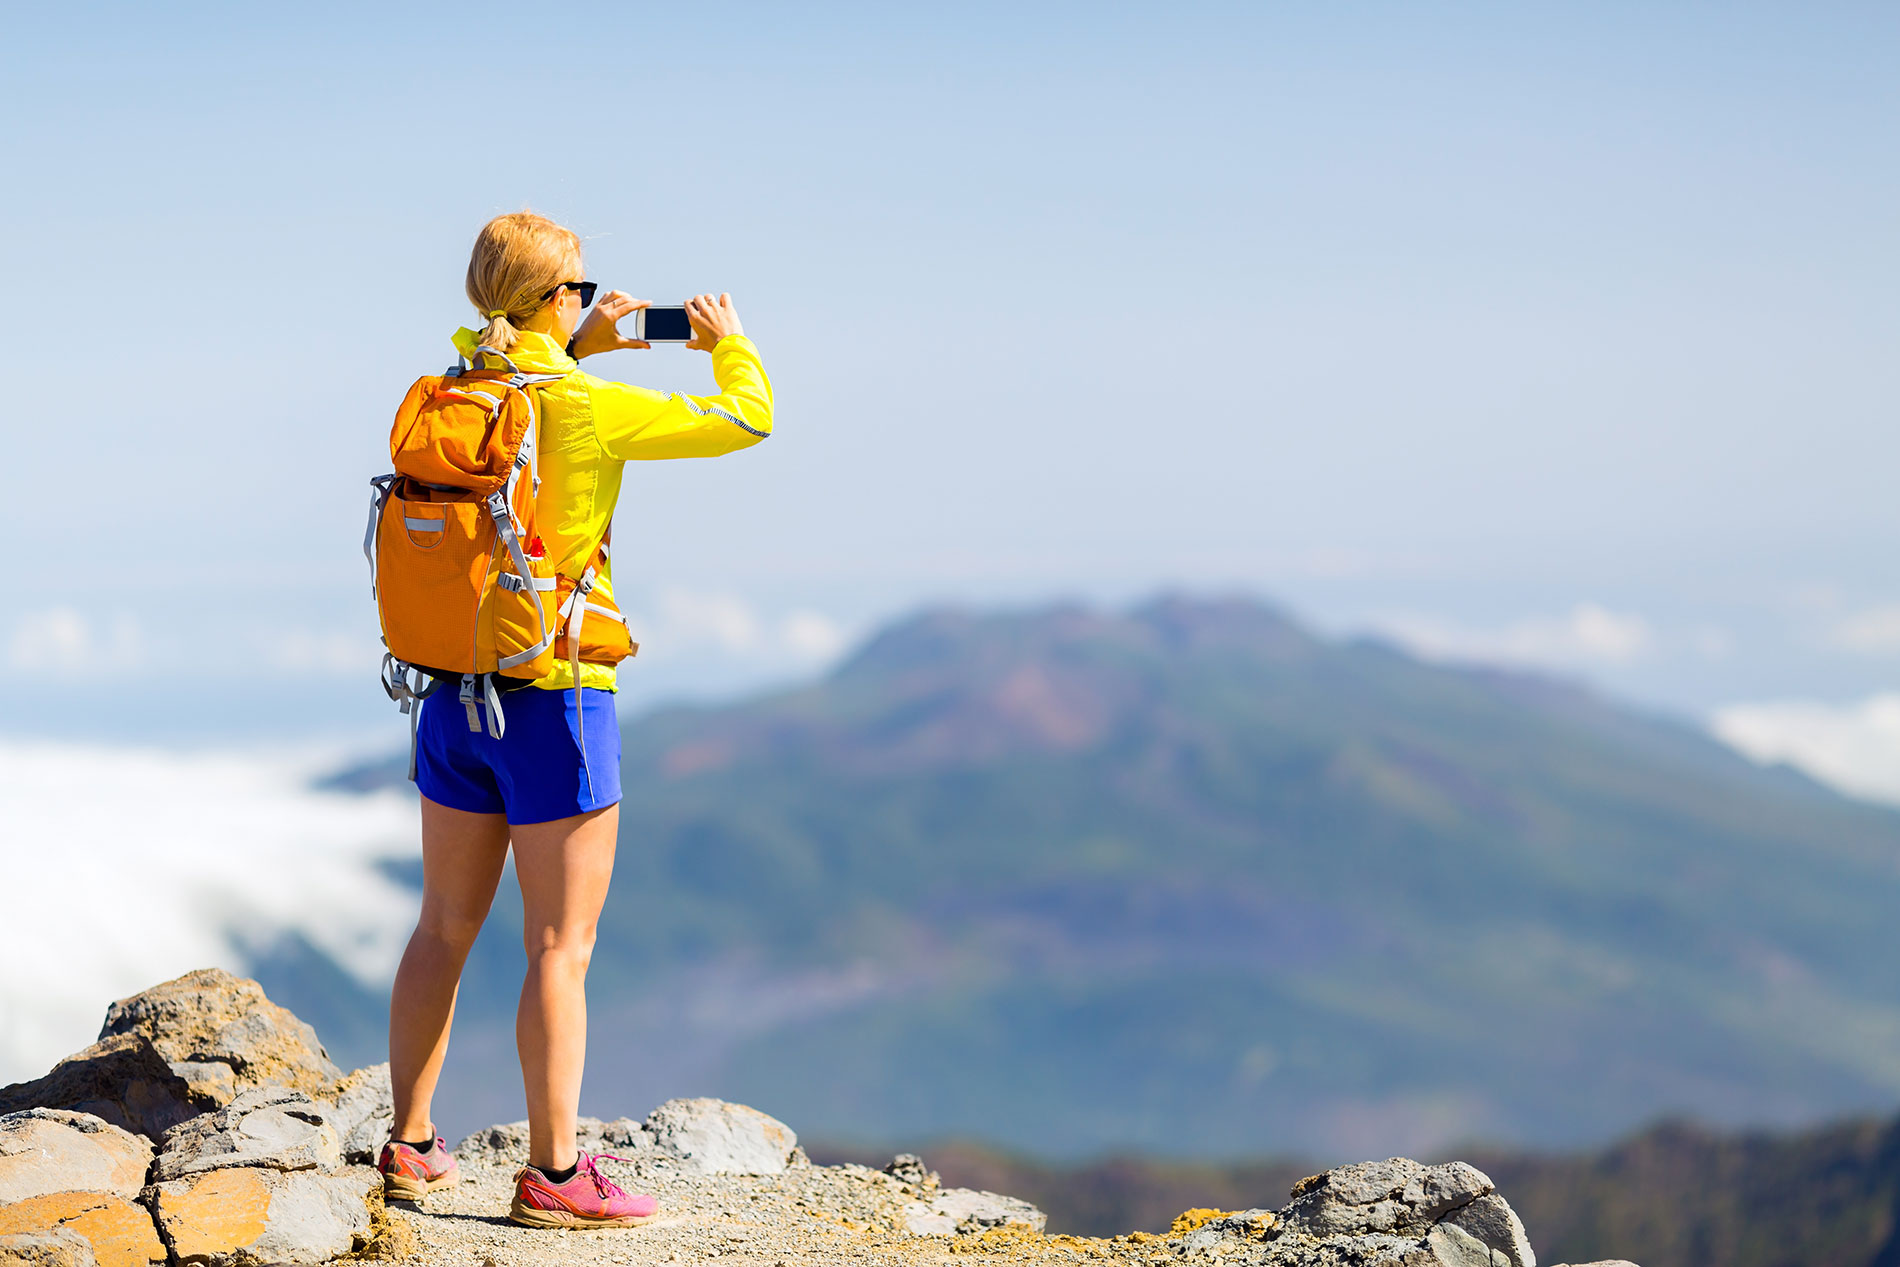 Frau bei einer Wanderpause in den Bergen: Bei sportlichen Aktivitäten ist der Verzicht auf Alkohol empfehlenswert.